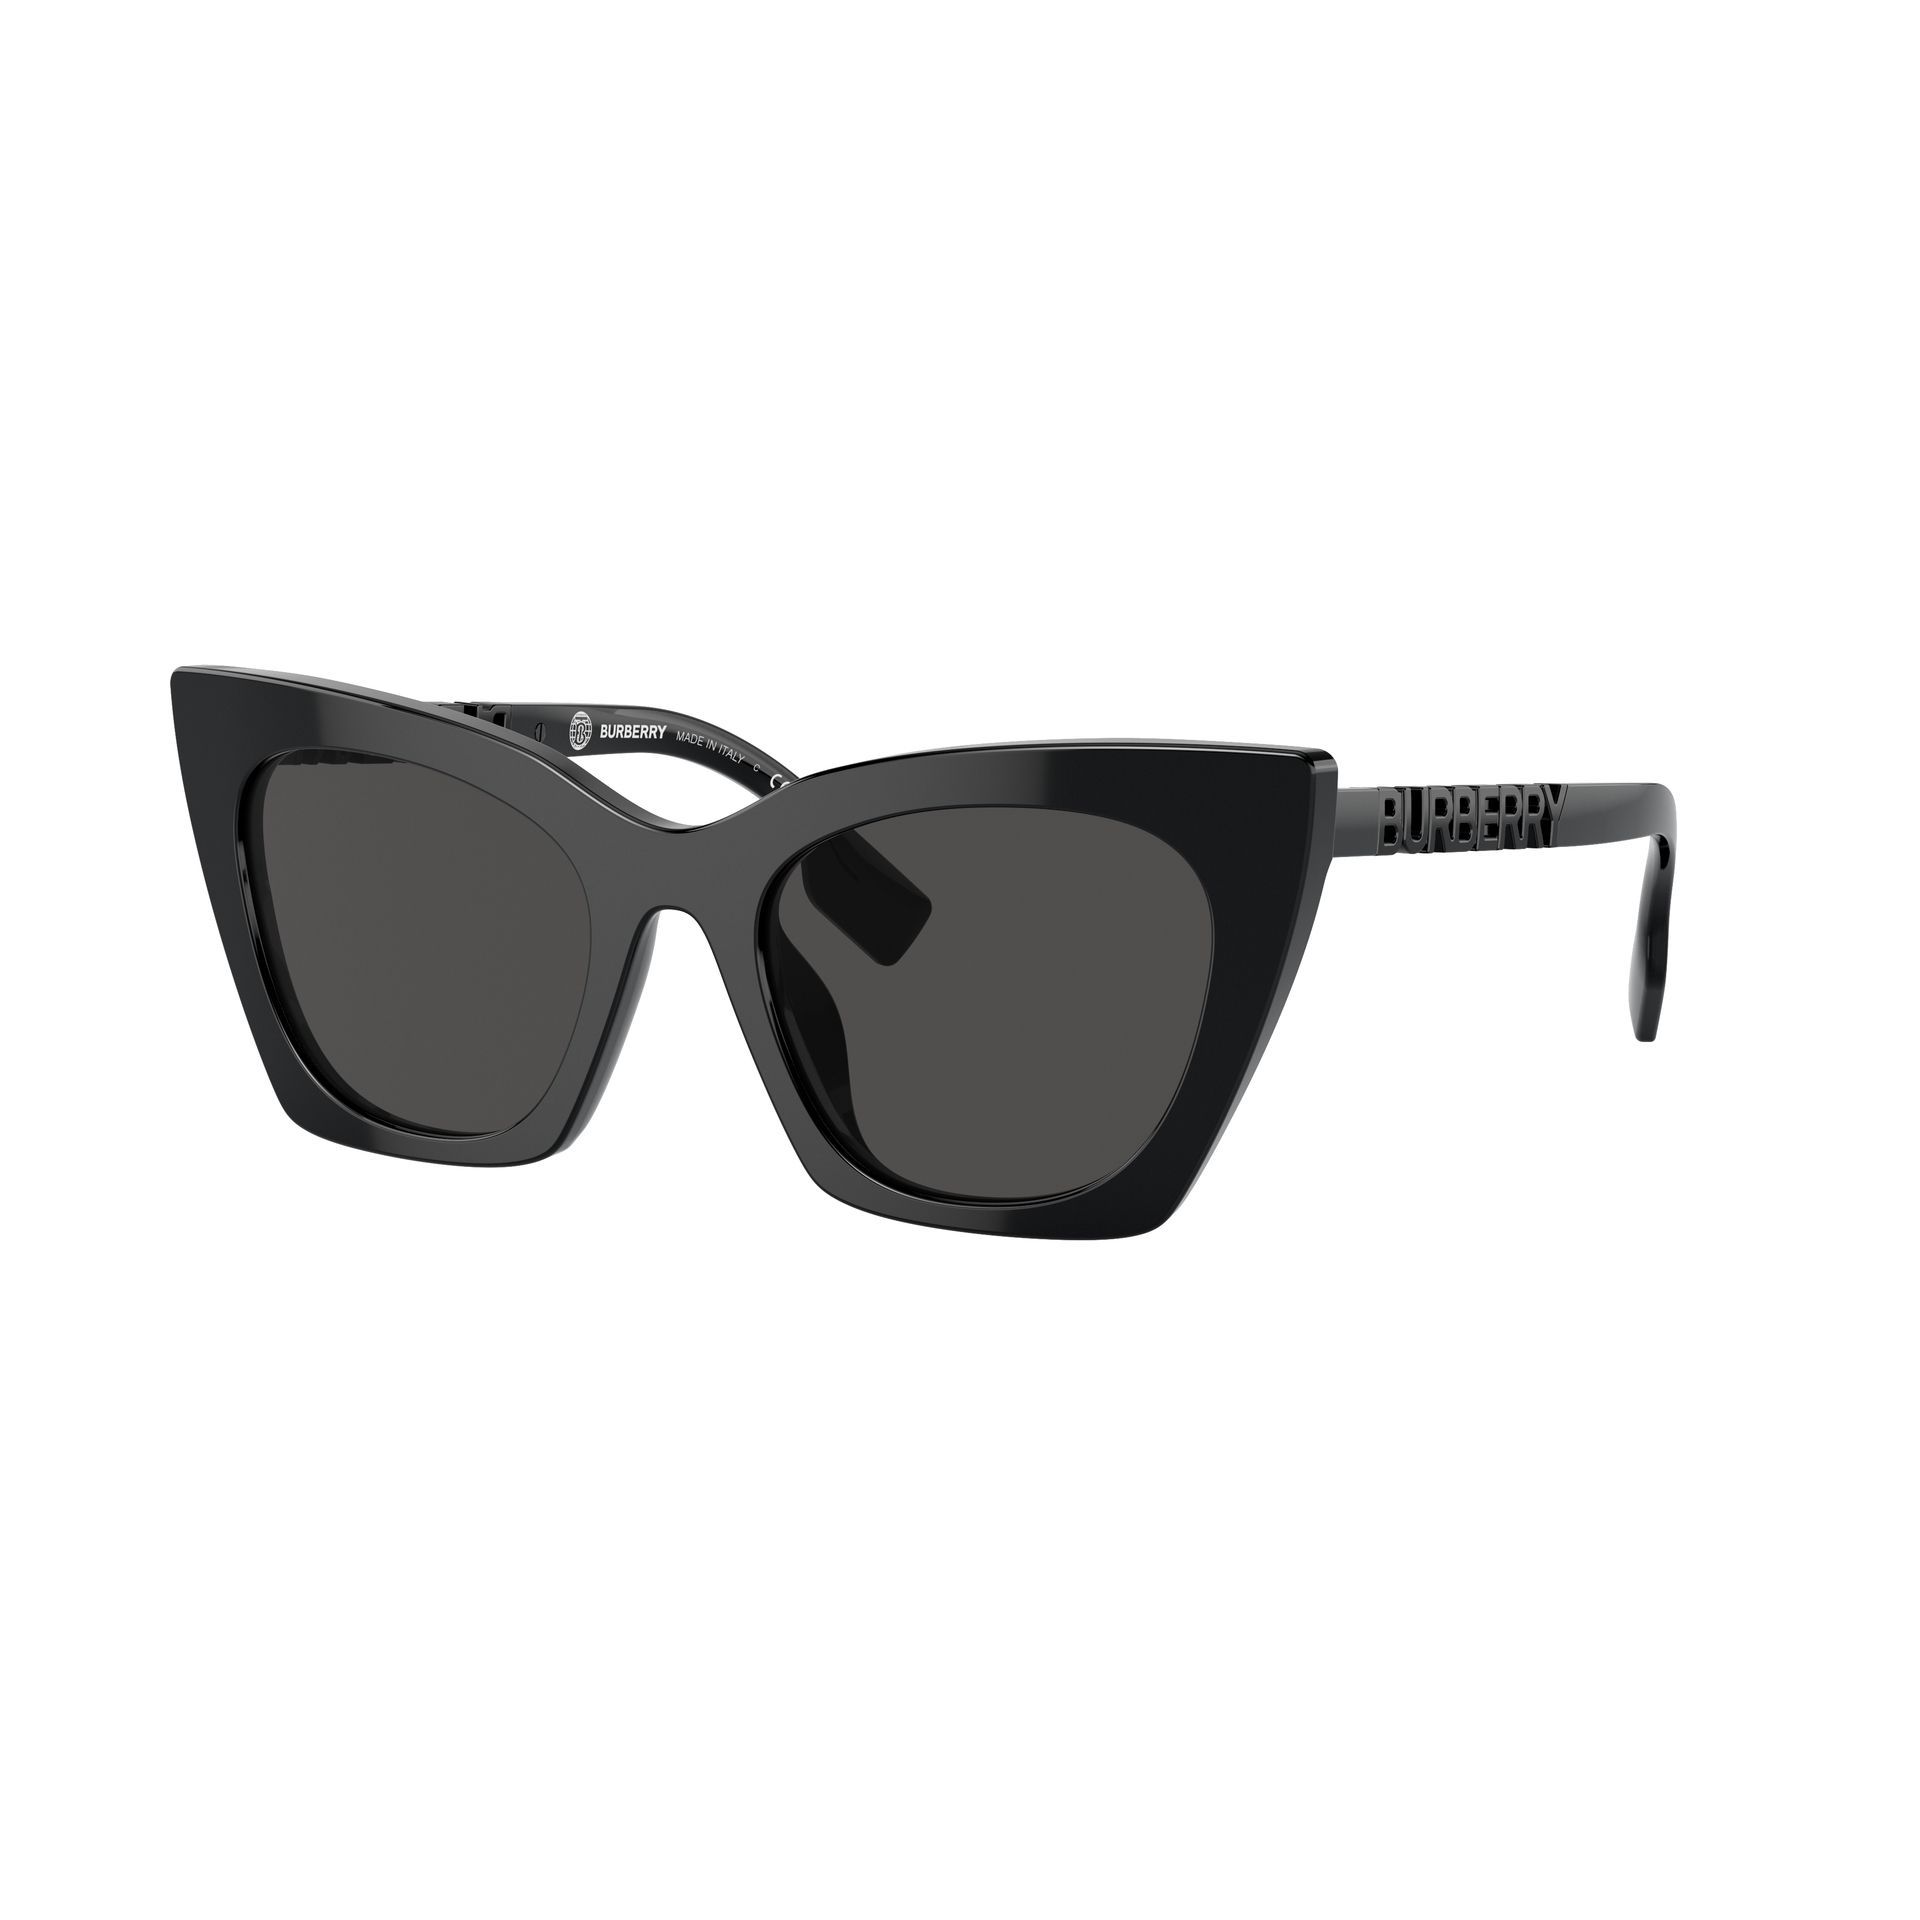 0BE4372U Cateye Sunglasses 300187 - size 52